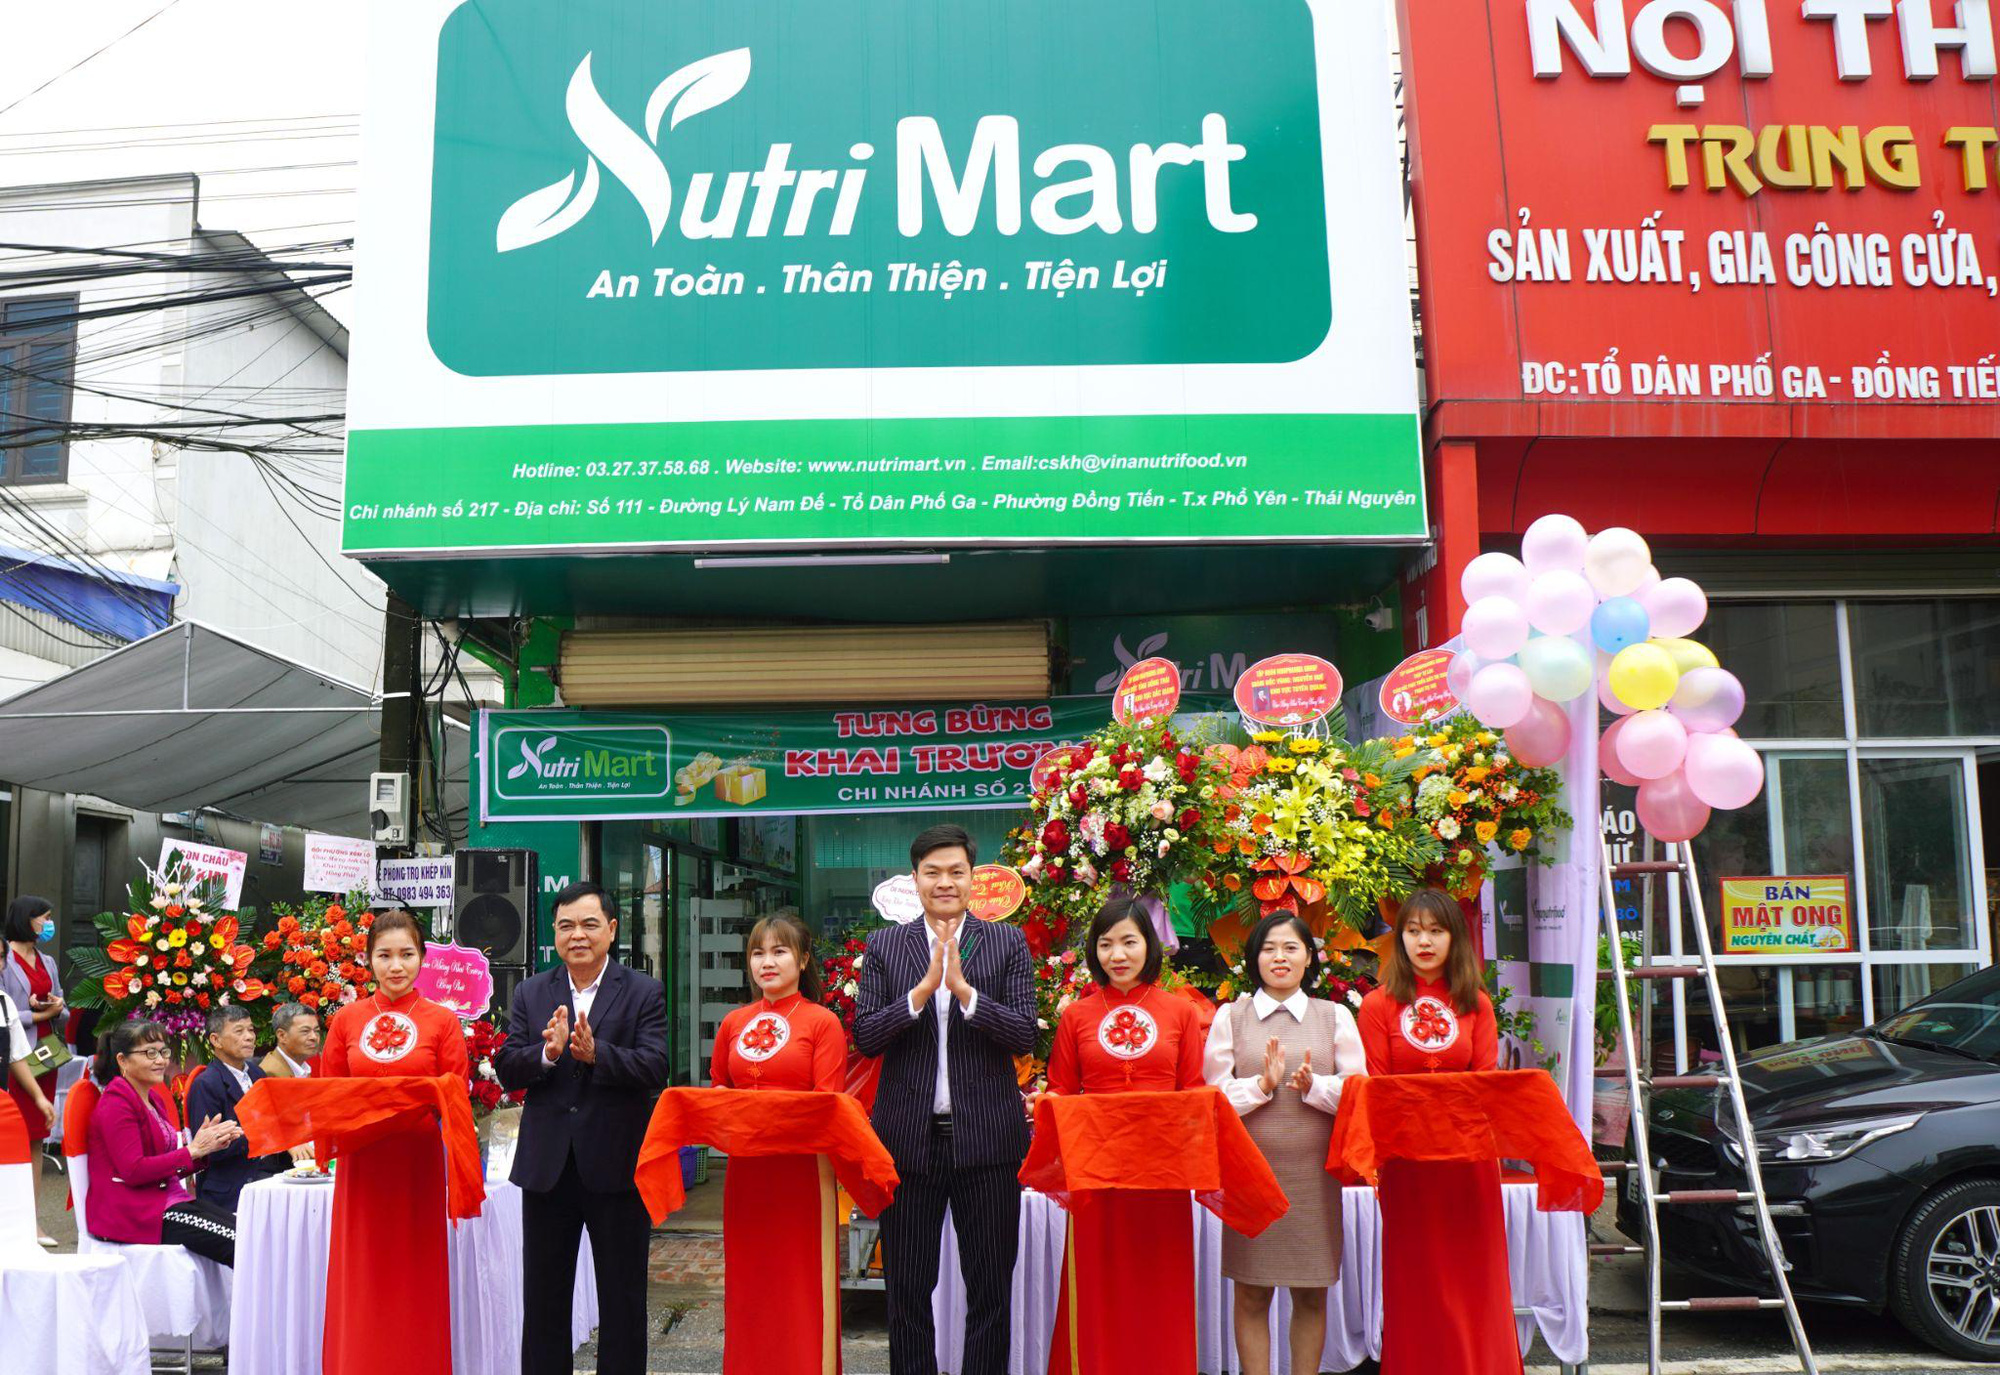 Vinanutrifood quyết dồn lực cho Nutri Mart, cán mốc 1000 cửa hàng trong tháng 12 năm 2021 - Ảnh 1.